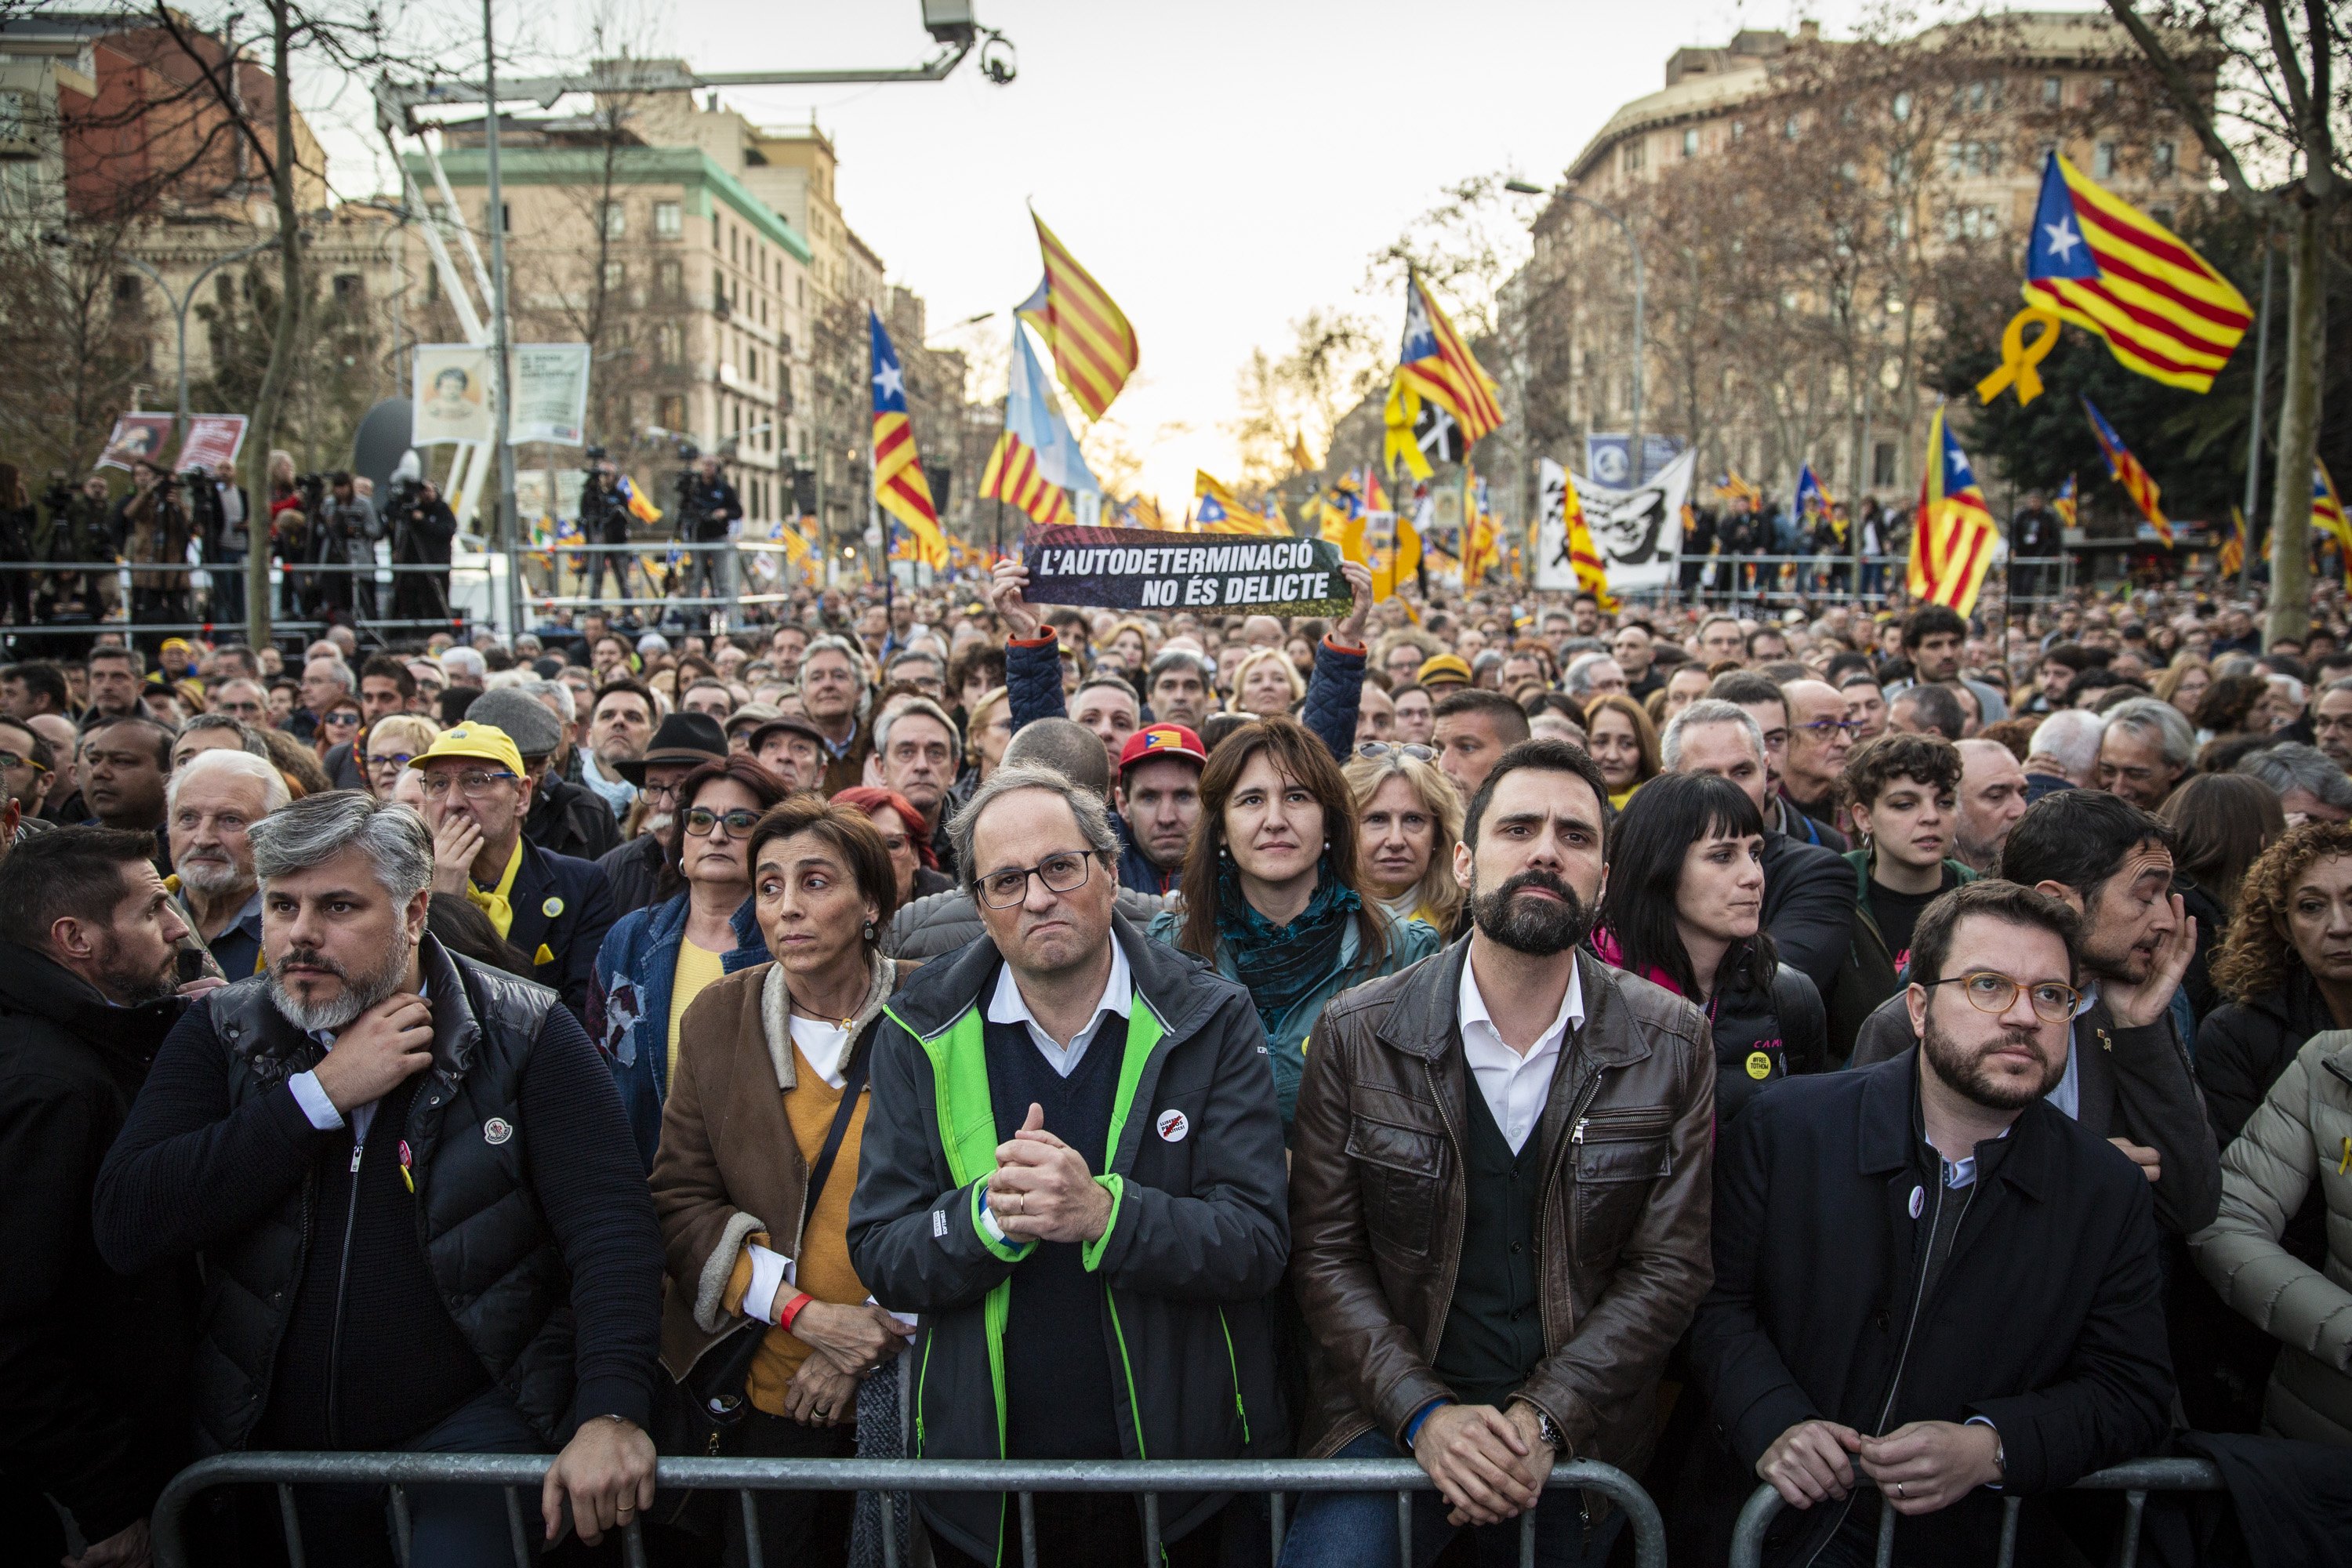 La BBC, rotunda: "Protesta masiva de los independentistas catalanes"